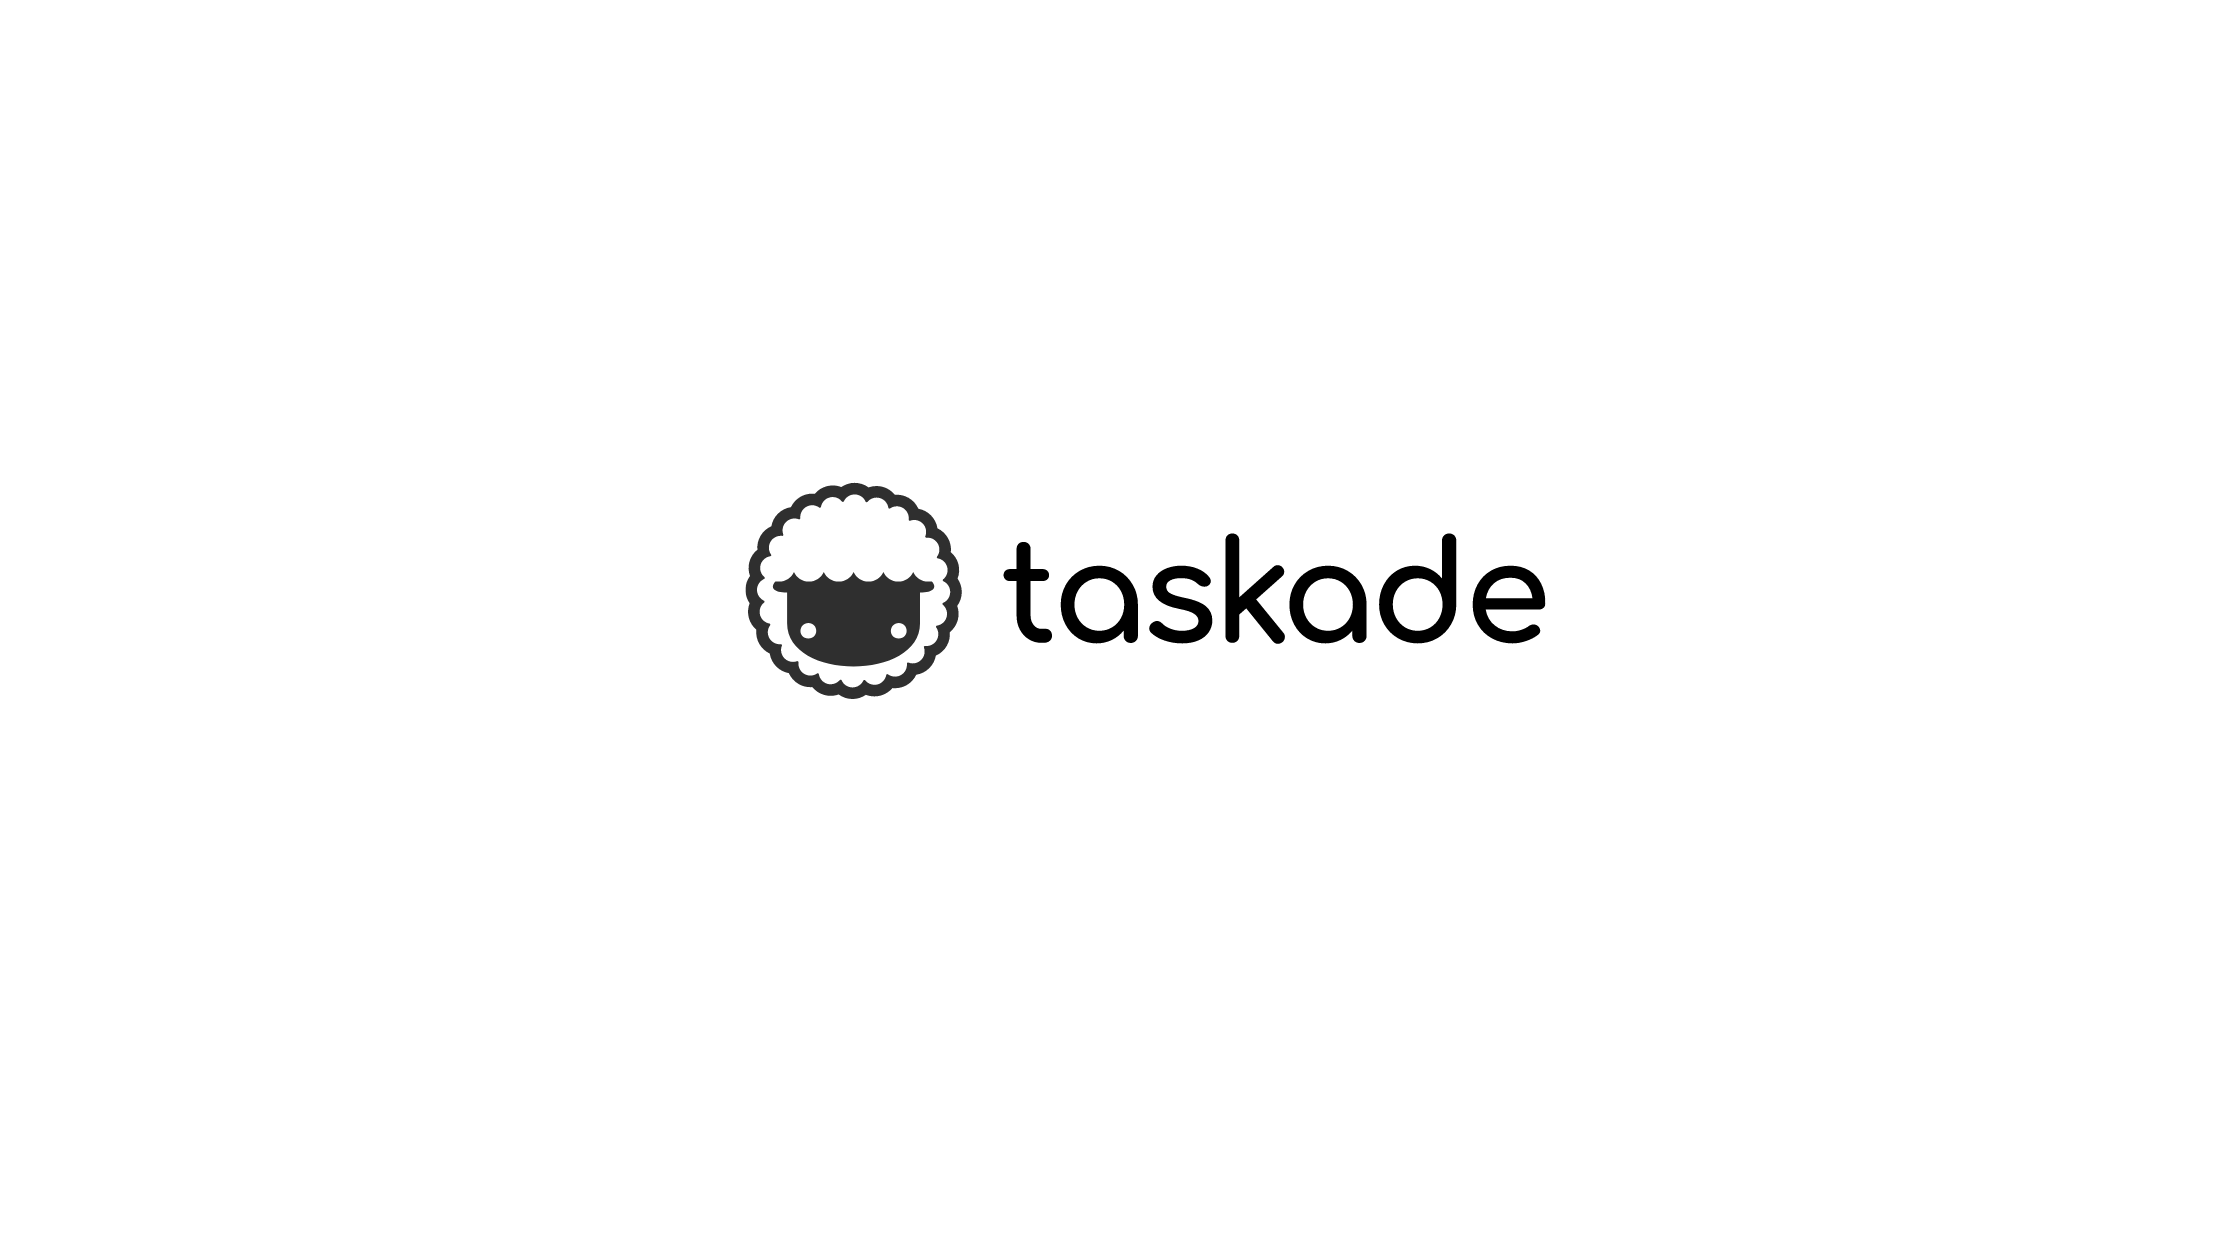 Takade